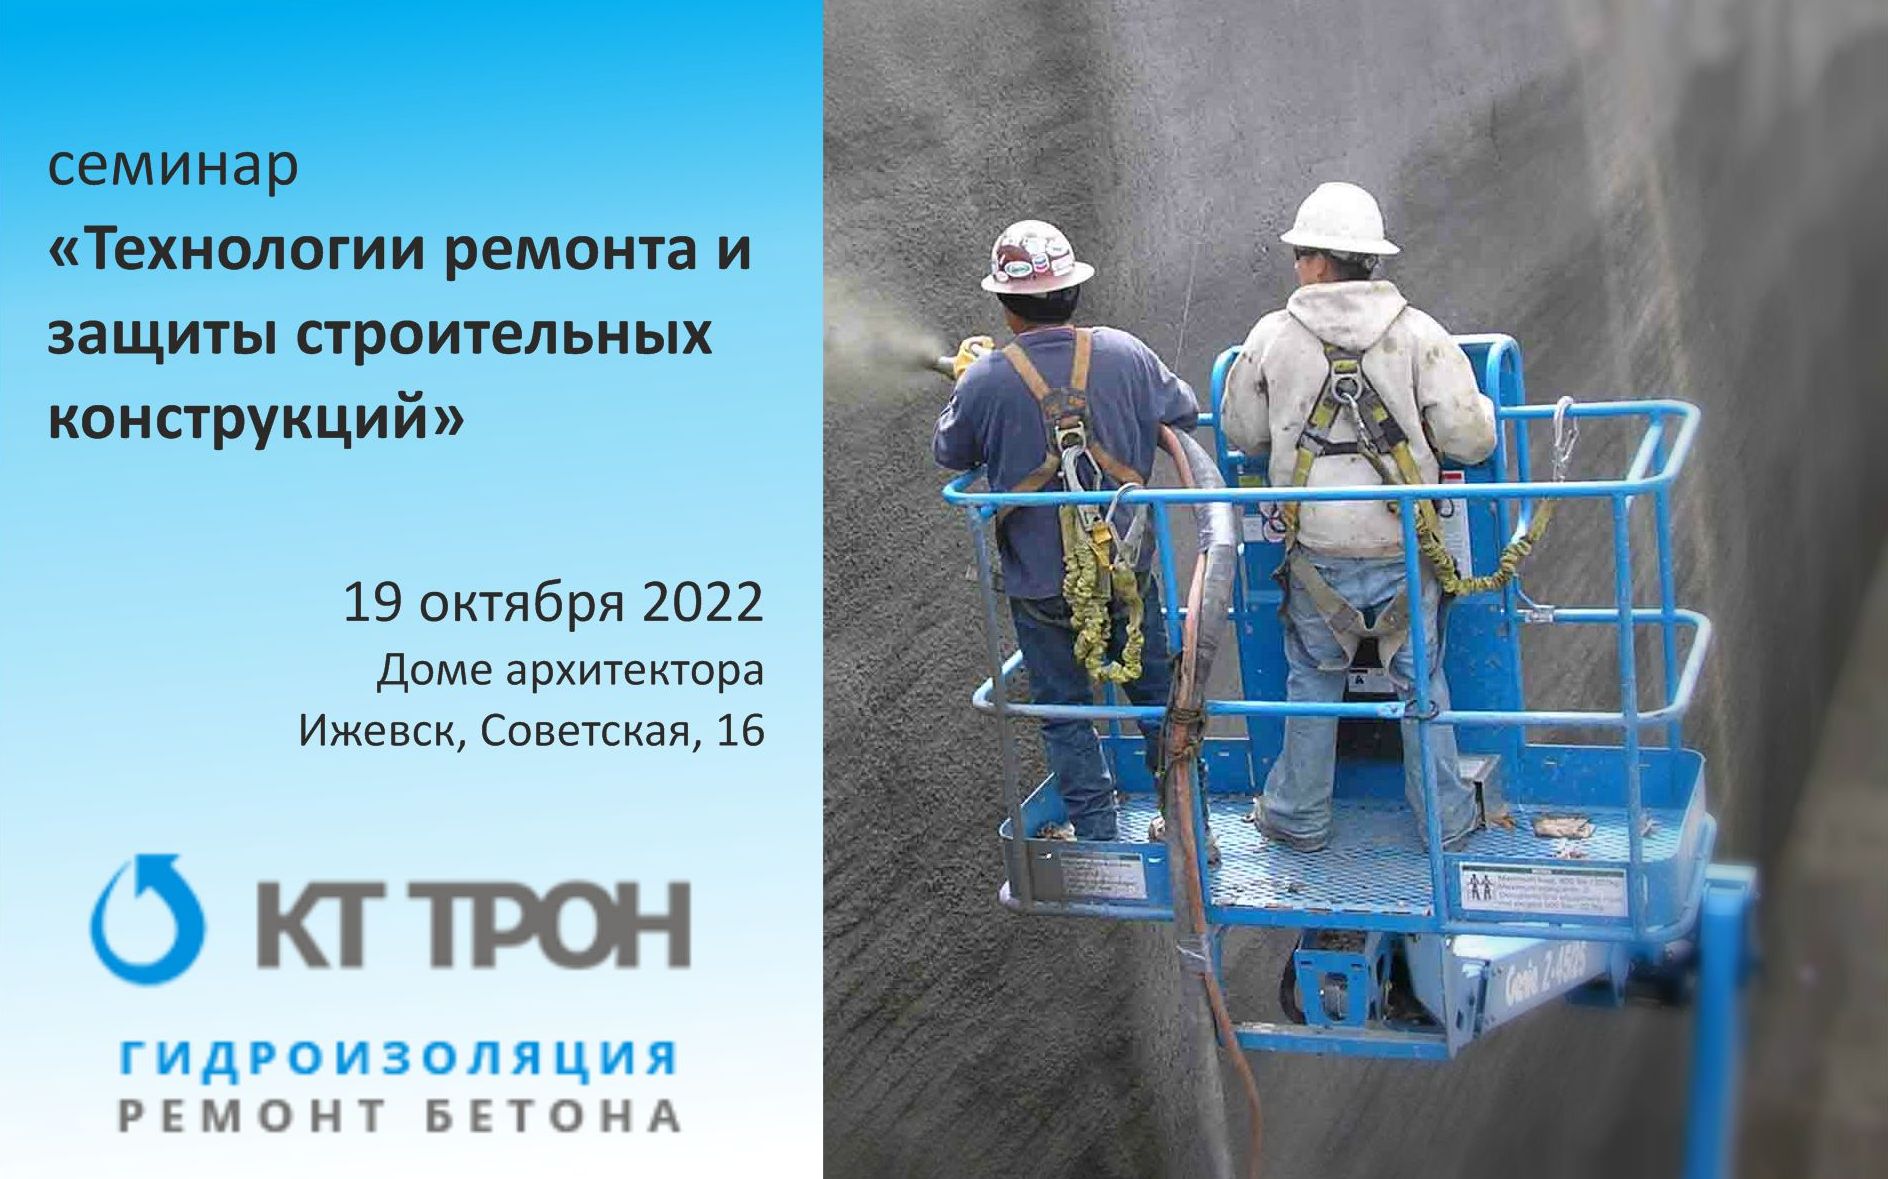 семинар «Технологии ремонта и защиты строительных конструкций», который пройдёт в среду 19 октября 2022 года в Доме архитектора